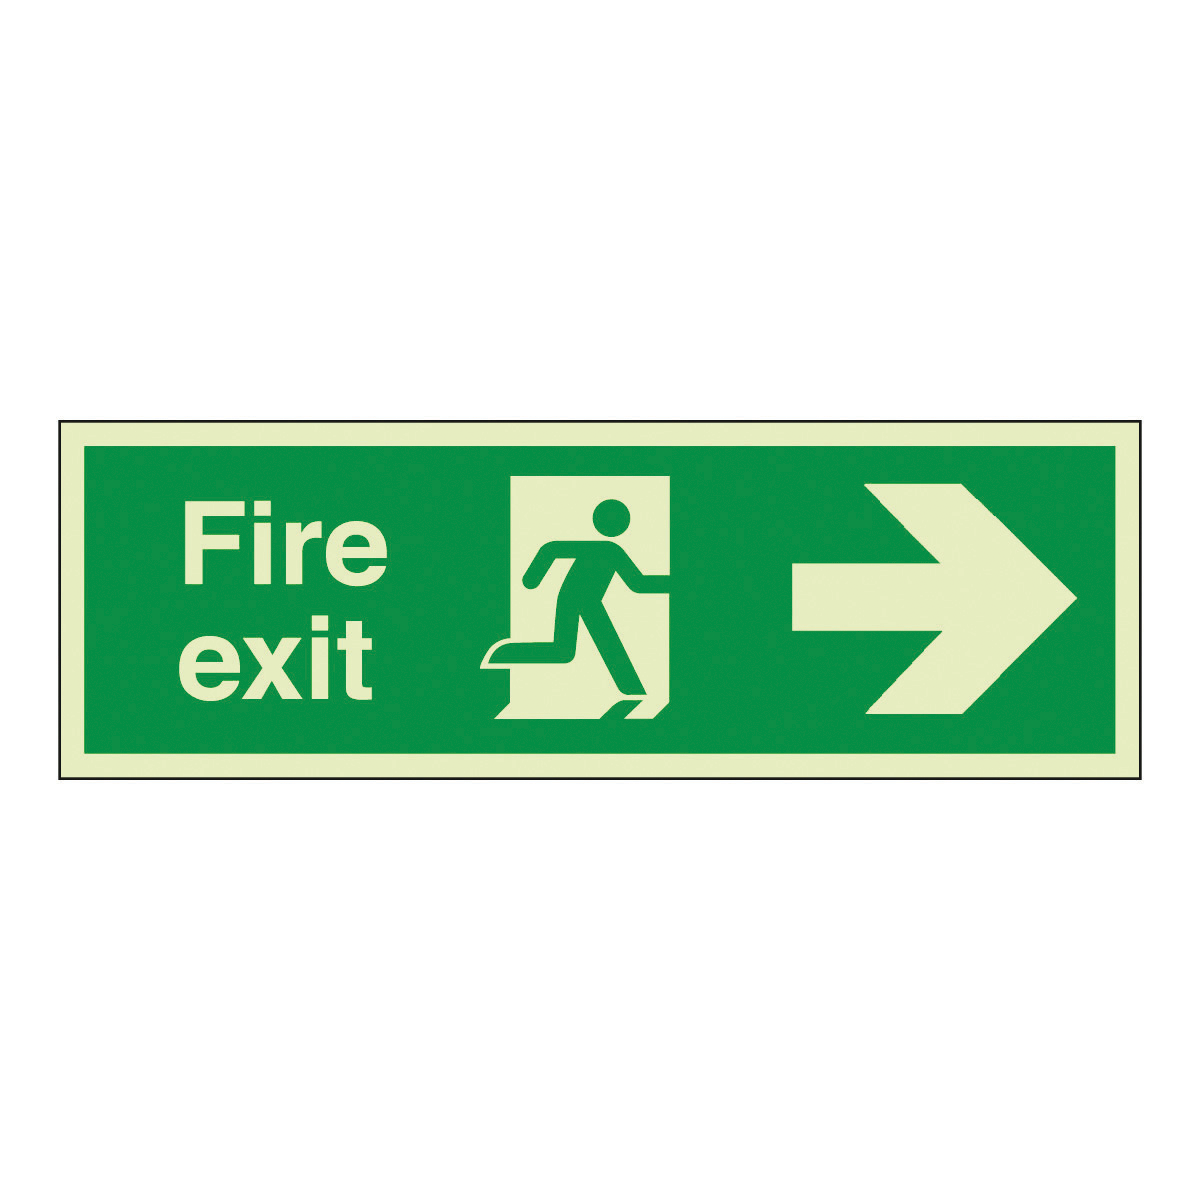 Fire Exit images